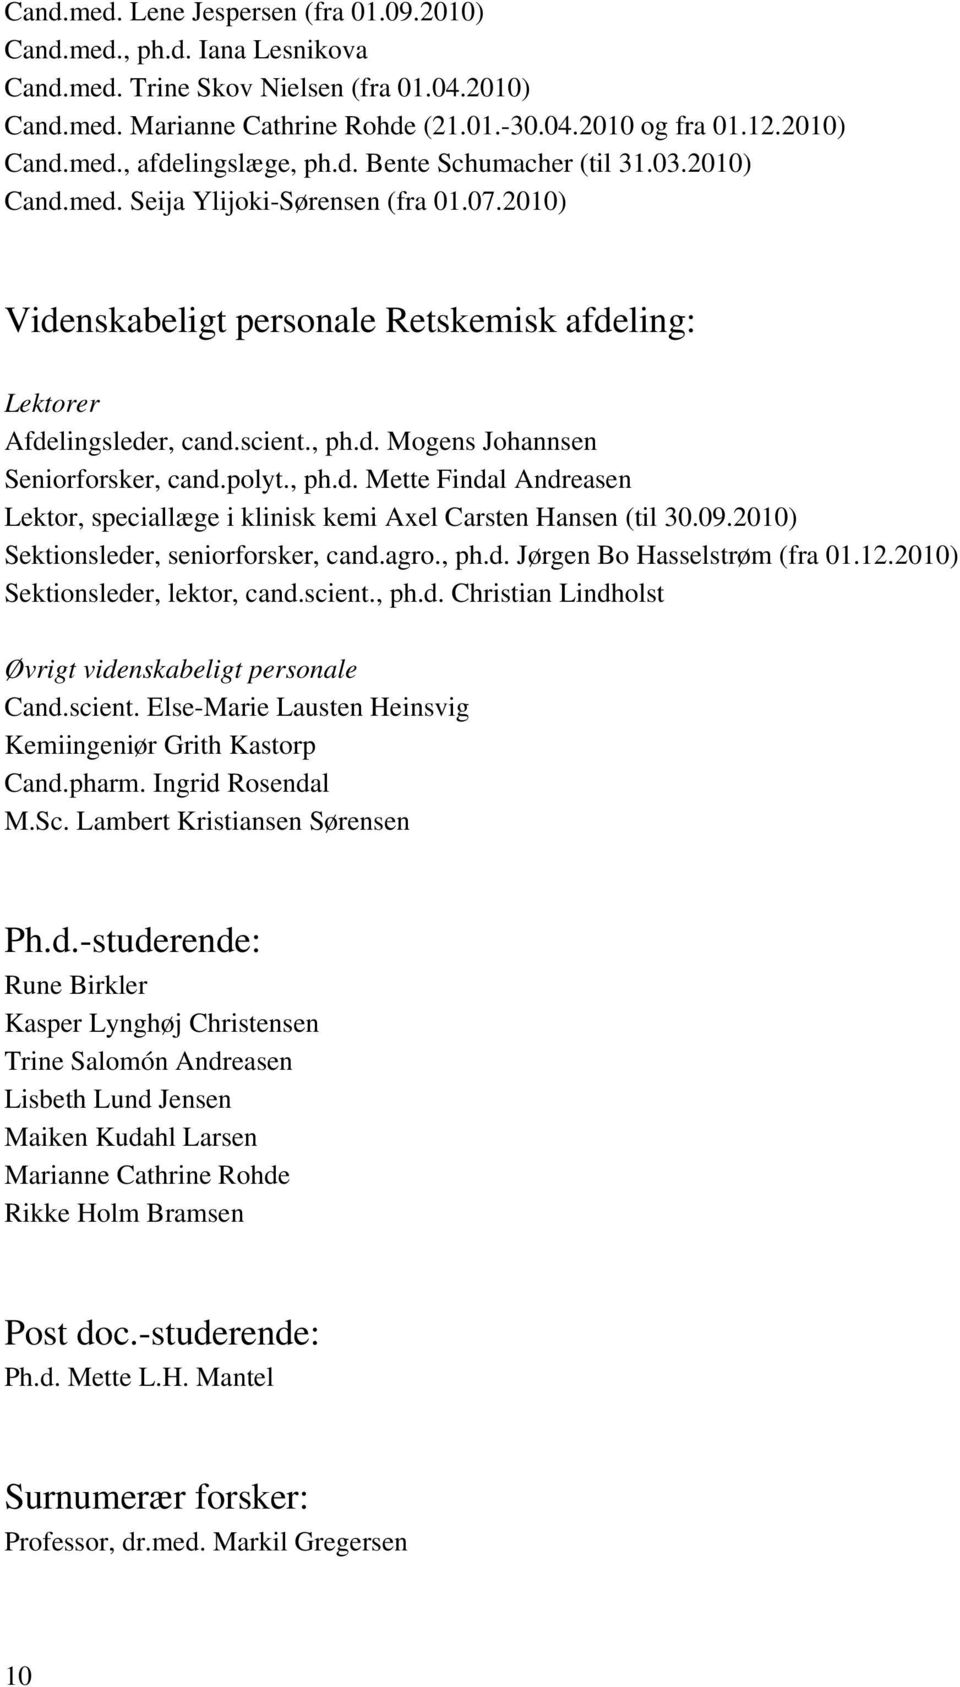 polyt., ph.d. Mette Findal Andreasen Lektor, speciallæge i klinisk kemi Axel Carsten Hansen (til 30.09.2010) Sektionsleder, seniorforsker, cand.agro., ph.d. Jørgen Bo Hasselstrøm (fra 01.12.